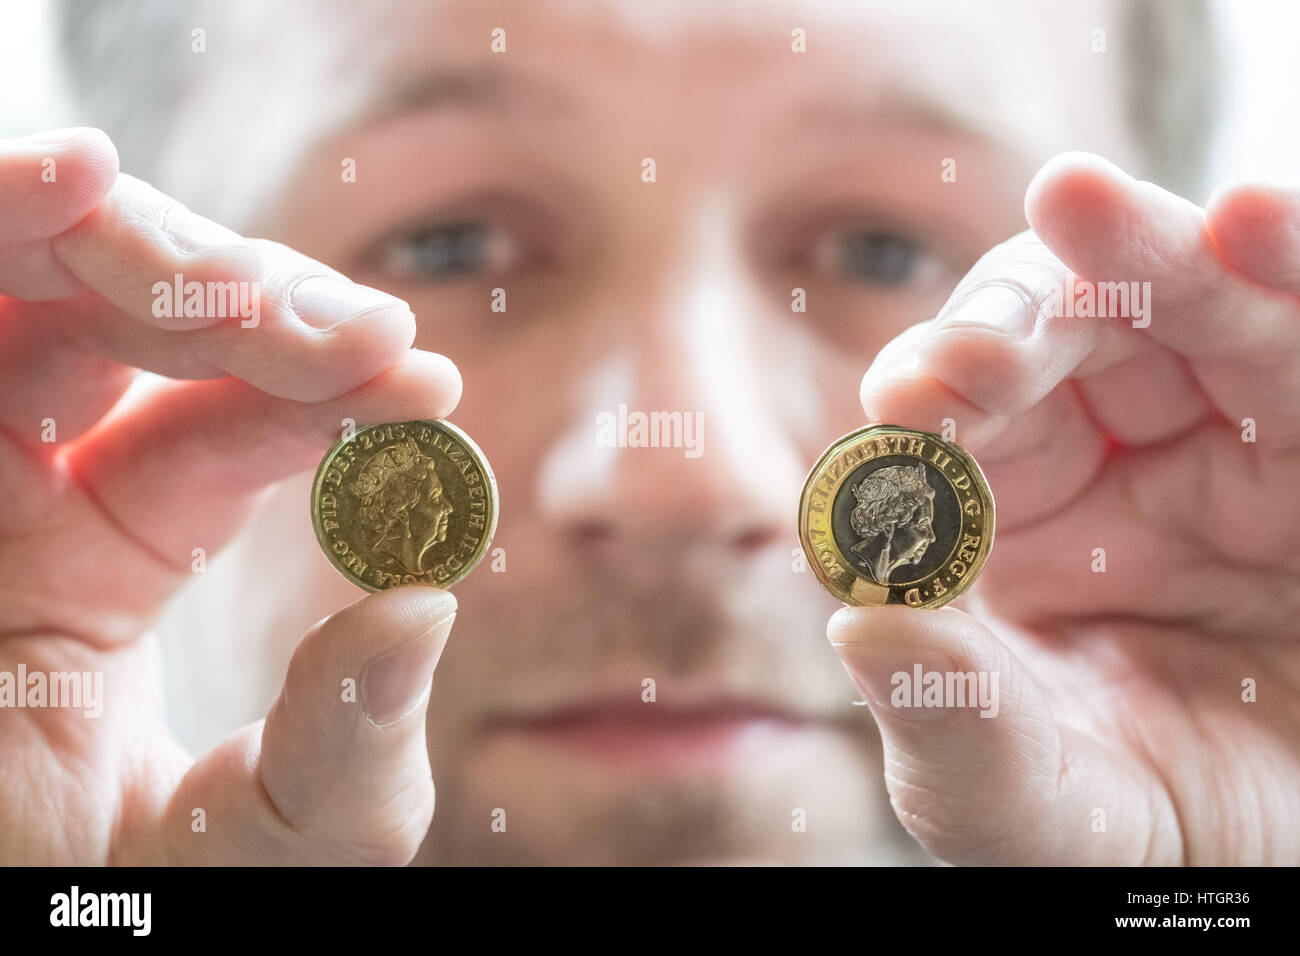 Llantrisant, South Wales, UK. 14. März 2017. Scott Kuperus, 40, Währung, Sicherheit und technischen Experten an der Royal Mint seit 9 Jahren. Vergleicht man eine neu gepressten £1 Münze (R) die Durchblutung am 28. März, ersetzen Sie die älteren £1 Münze (L) tritt. Mit der hohen Sicherheits-Feature der Münze, eine Technologie, die bisher nur in Banknoten verwendet wurde Scott Kuperus ist zuversichtlich, dass die neue £1 ist die "sicherste Münze aller Zeiten." © Guy Corbishley/Alamy Live News Stockfoto